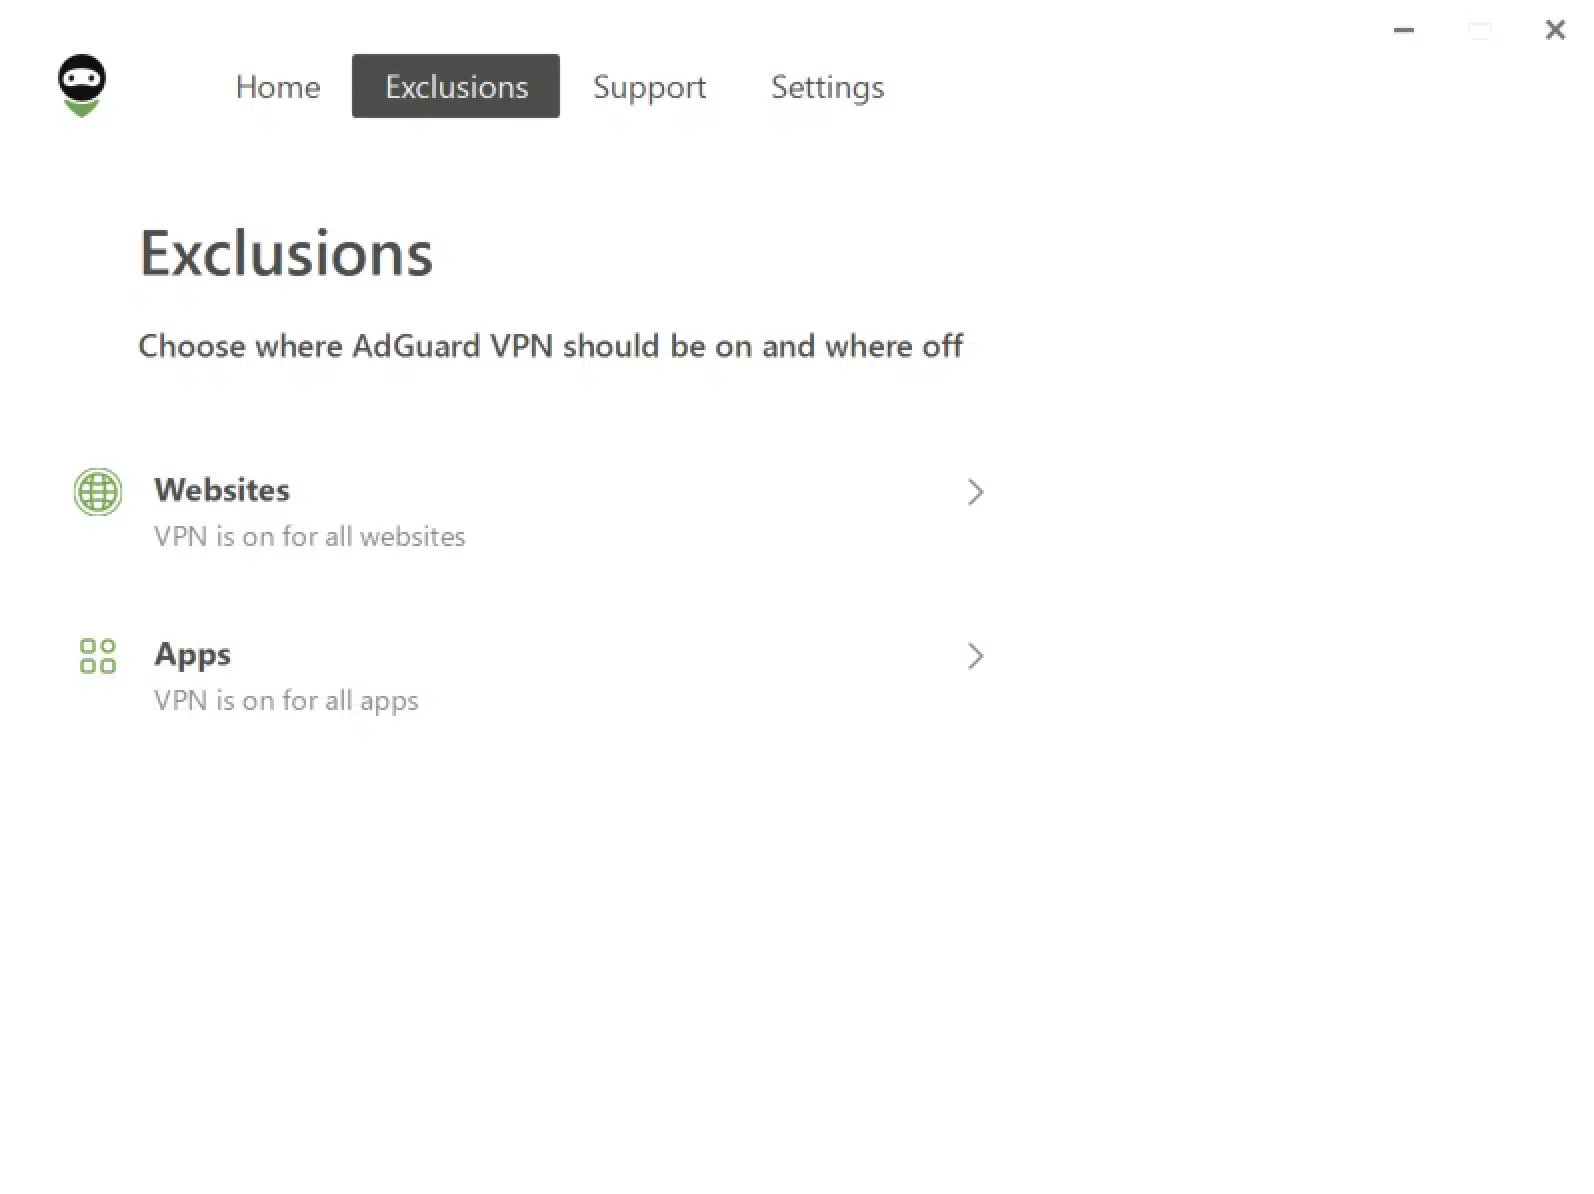 AdGuard_VPN - Windows App - Exclusions